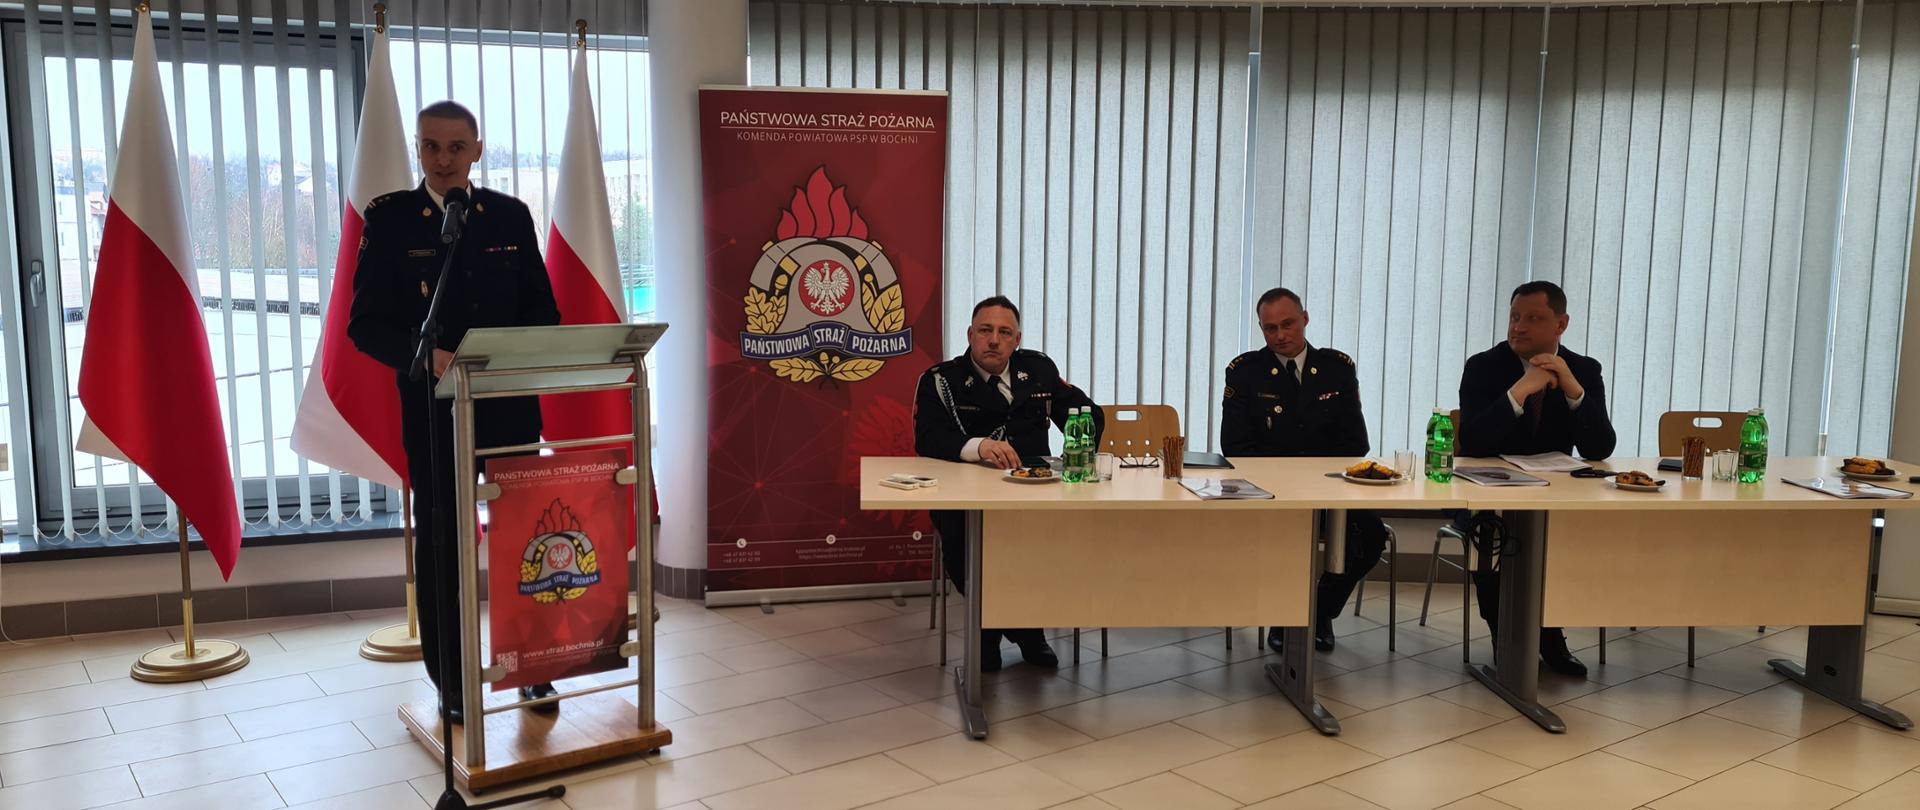 Zdjęcie ukazuje w centralnej części strażaka – Zastępcę Małopolskiego Komendanta Wojewódzkiego PSP ubranego w strój strażacki wyjściowy, który stojąc na mównicy wygłasza przemówienie. Na drugim planie siedzą dwóch strażaków oraz jeden mężczyzna ubrany w garnitur. W tle znajduje się rolety koloru szarego oraz flagi państwowej koloru biało-czerwonego